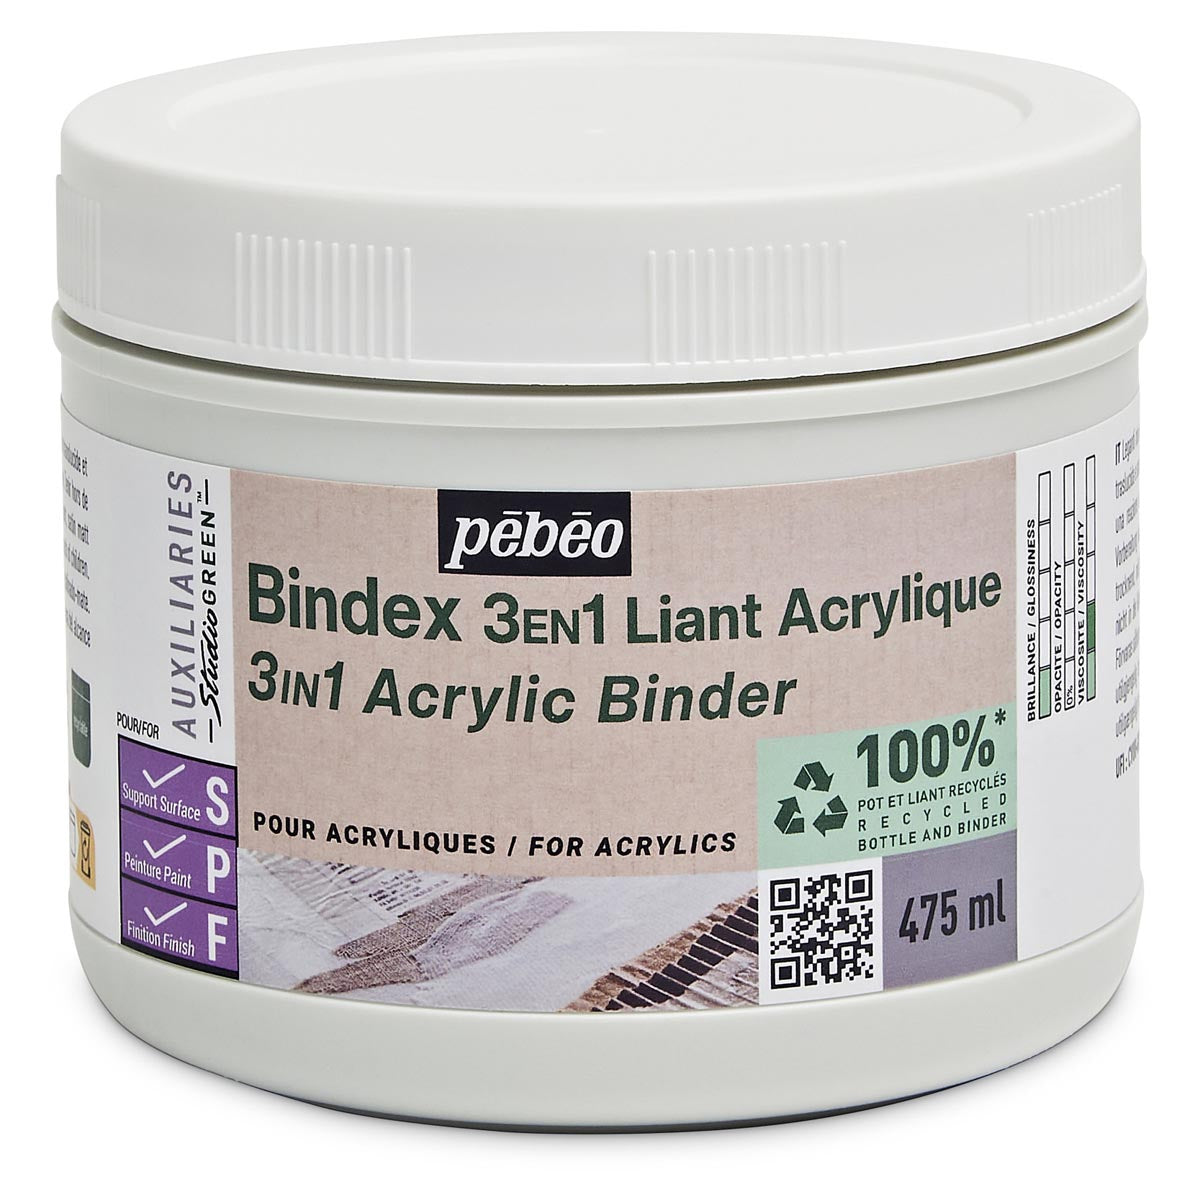 Pebeo - BindEx 3IN1 acrylique Binder Studio Green - 945 ml